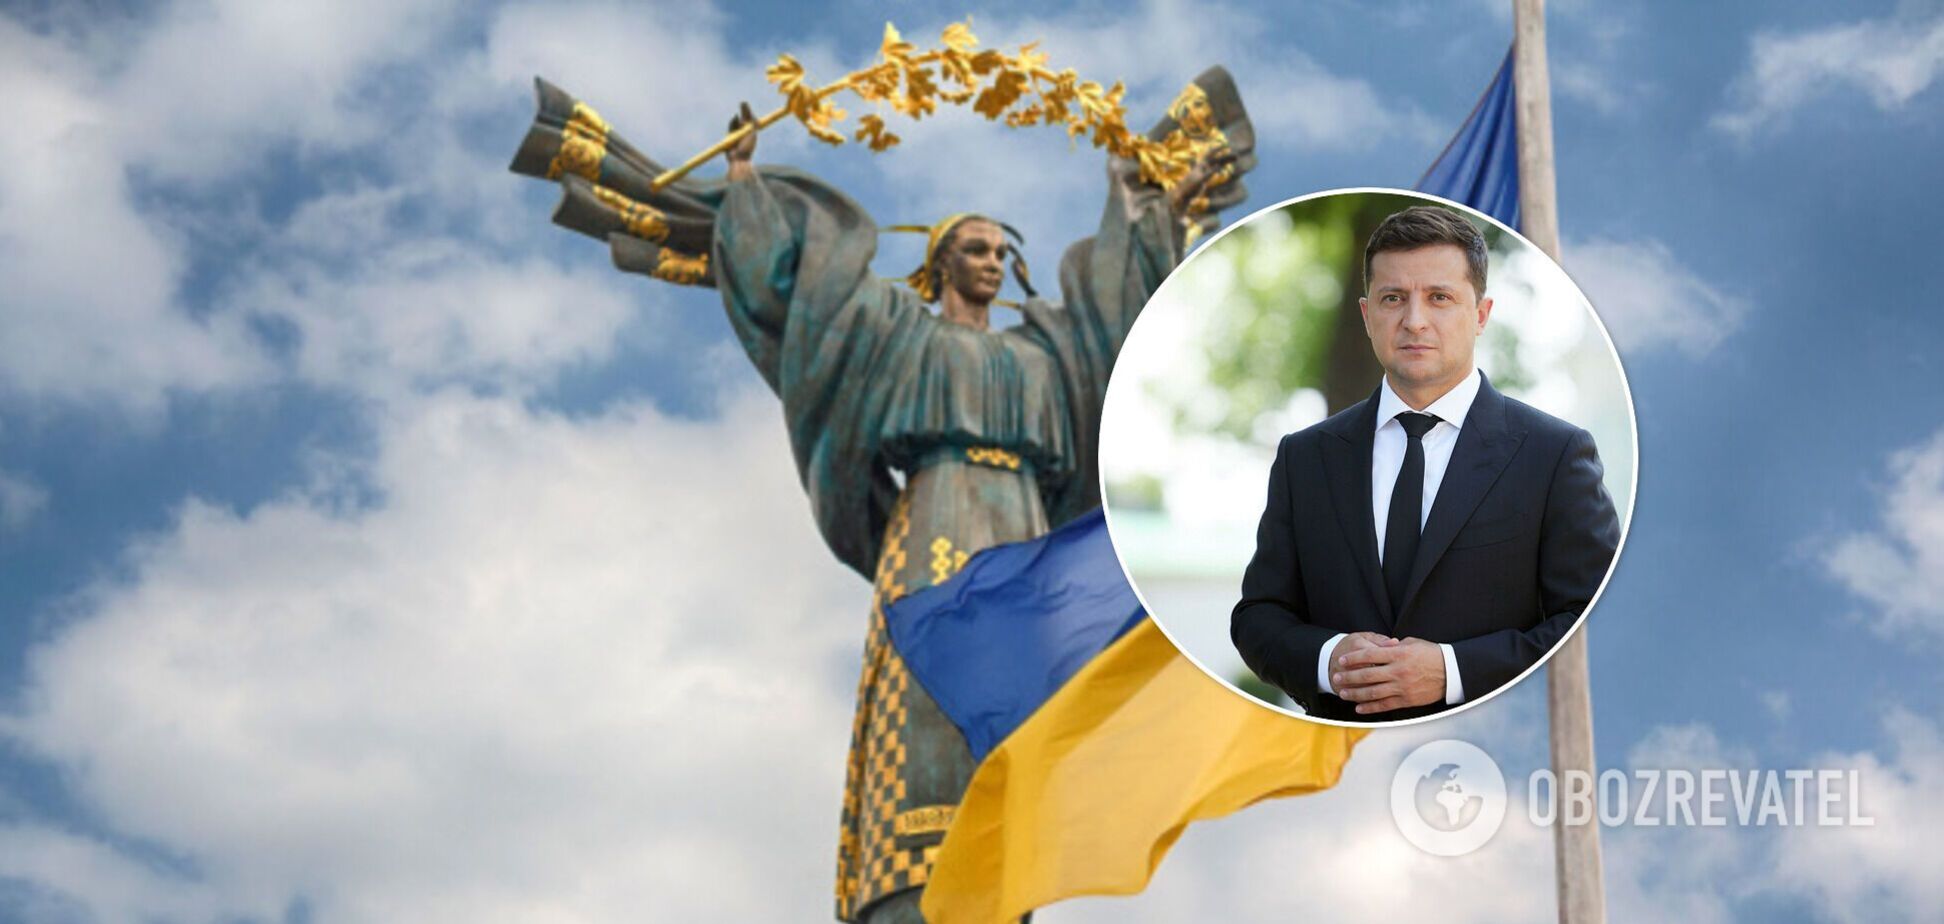 Як Україна буде святкувати День Незалежності: Зеленський презентував план